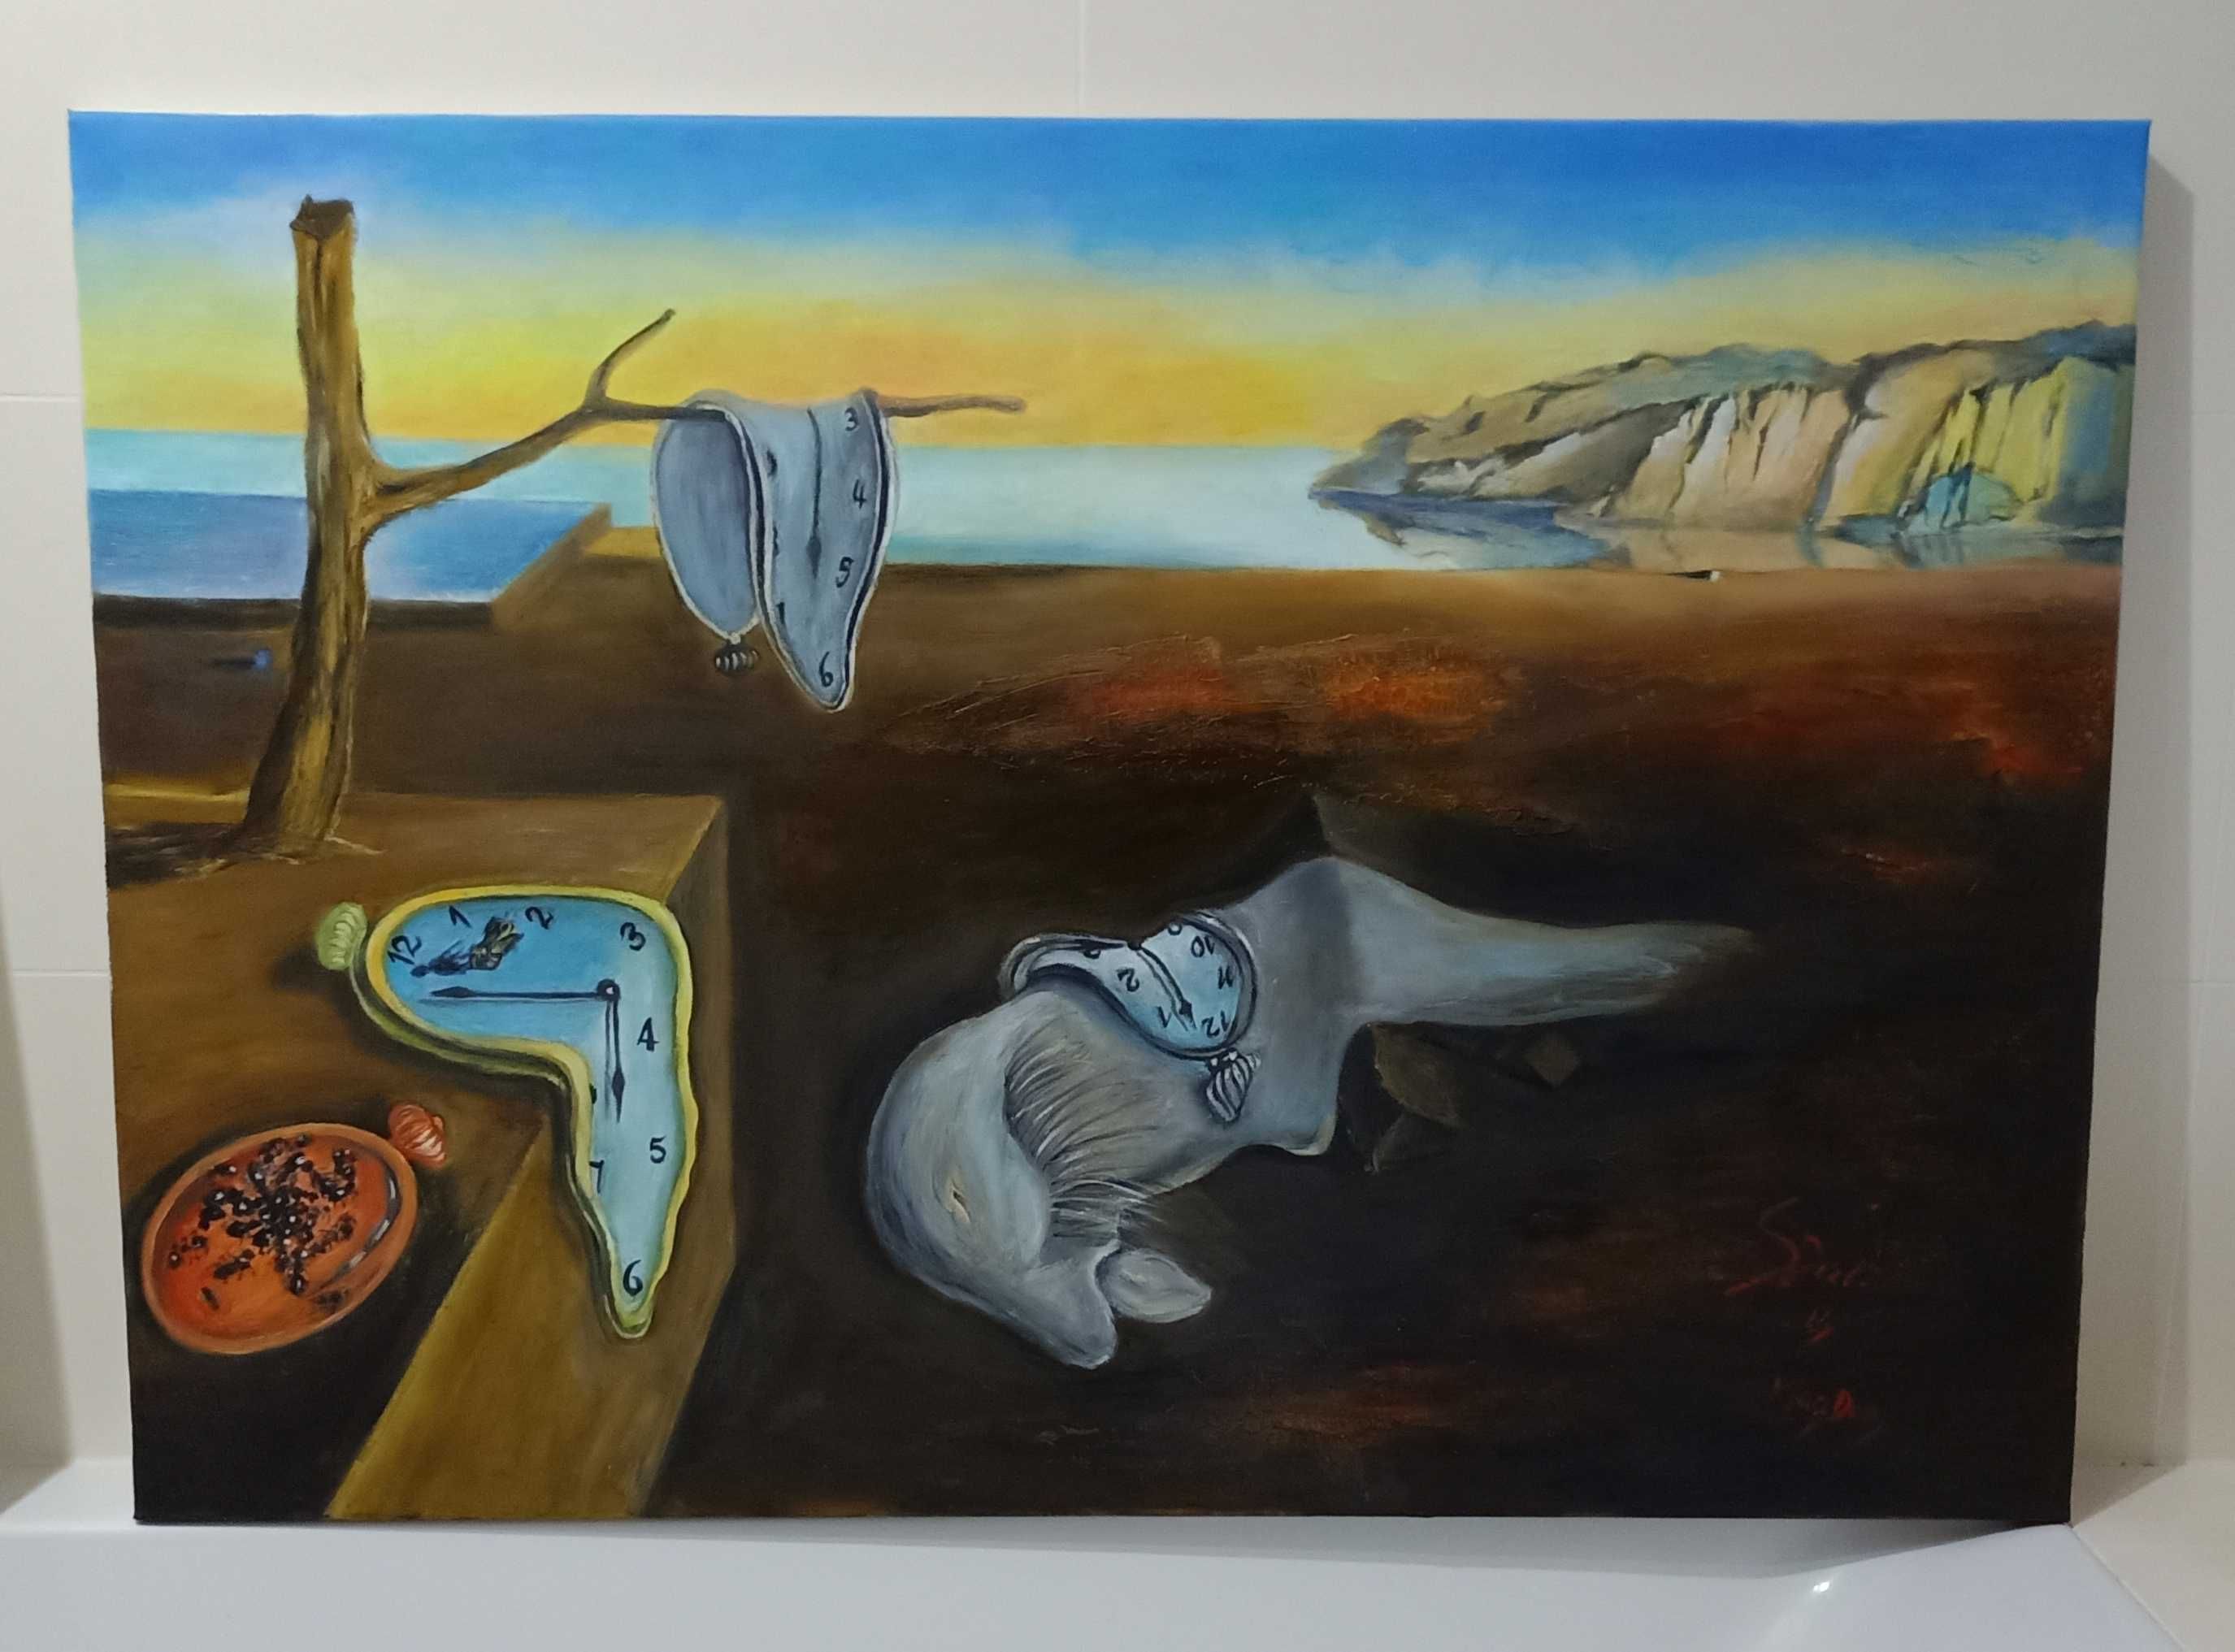 Obraz ,,Trwałość pamięci" Salvadora Dali